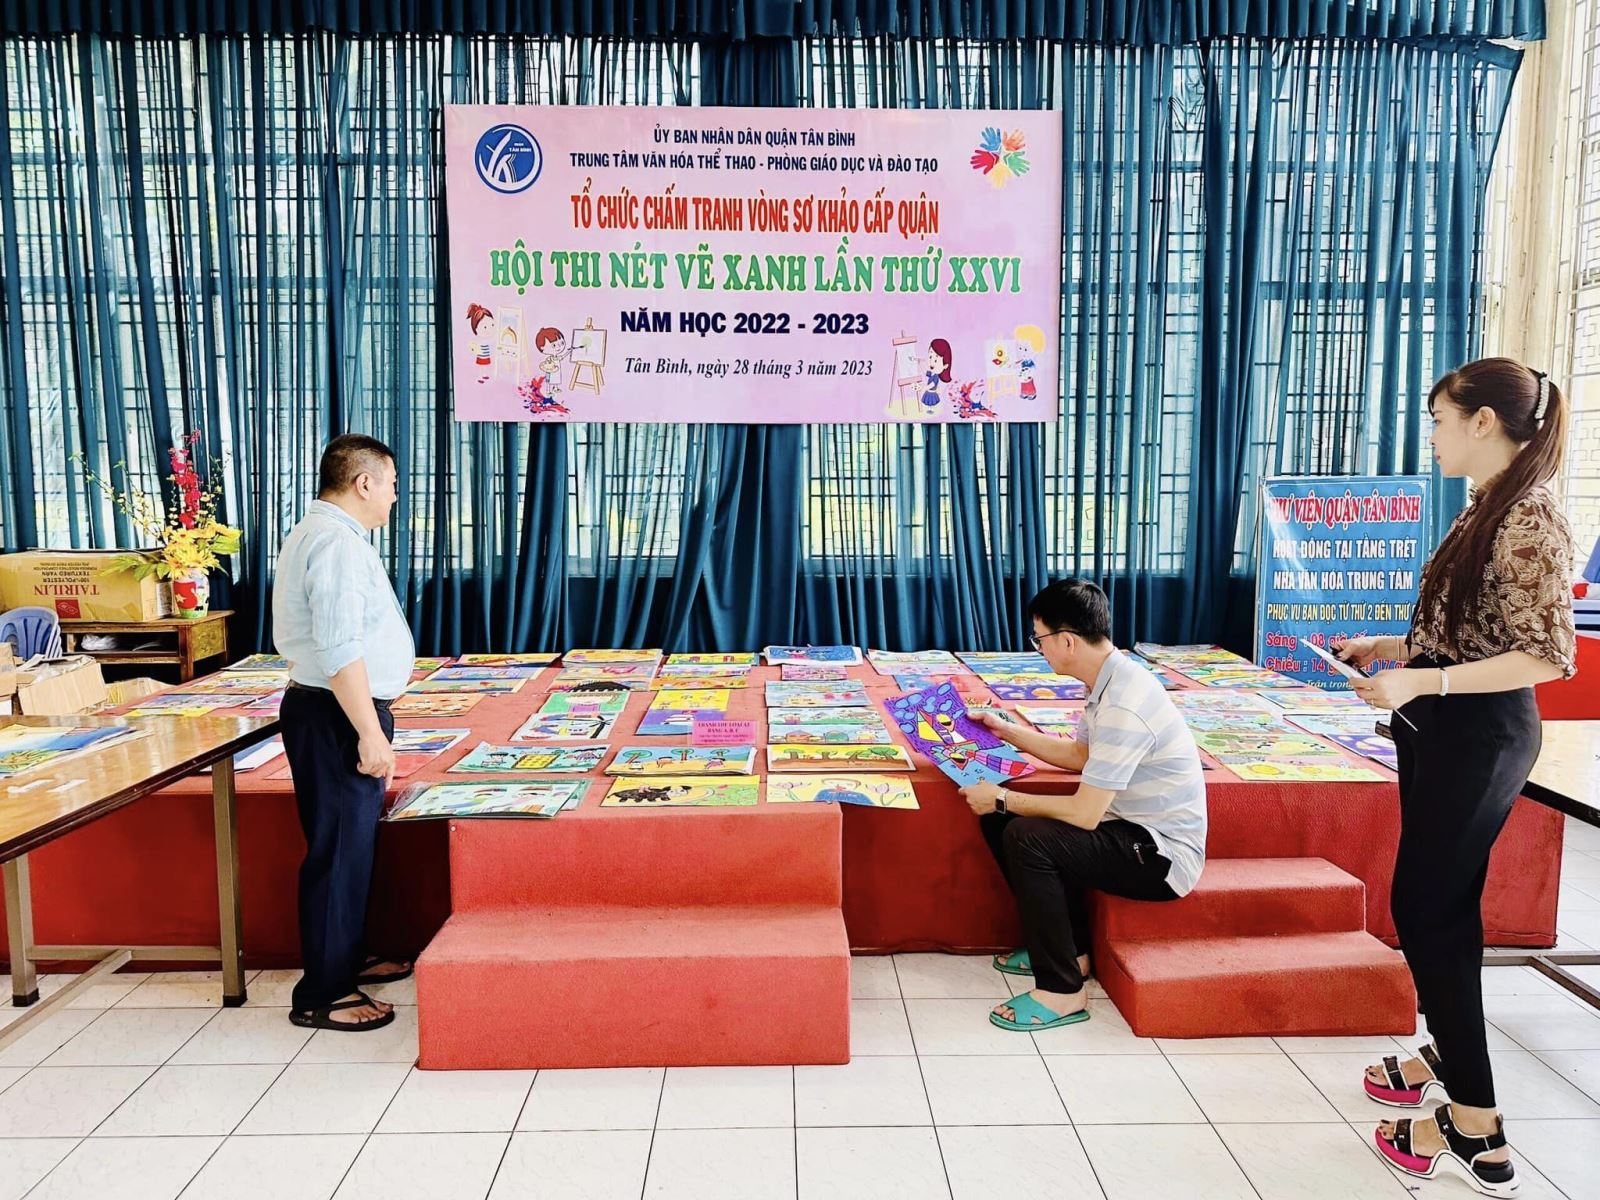 Thư viện quận Tân Bình: Tổ chức Chấm tranh Vòng sơ khảo cấp Quận Hội thi Nét vẽ xanh lần thứ XXVI năm học 2022-2023